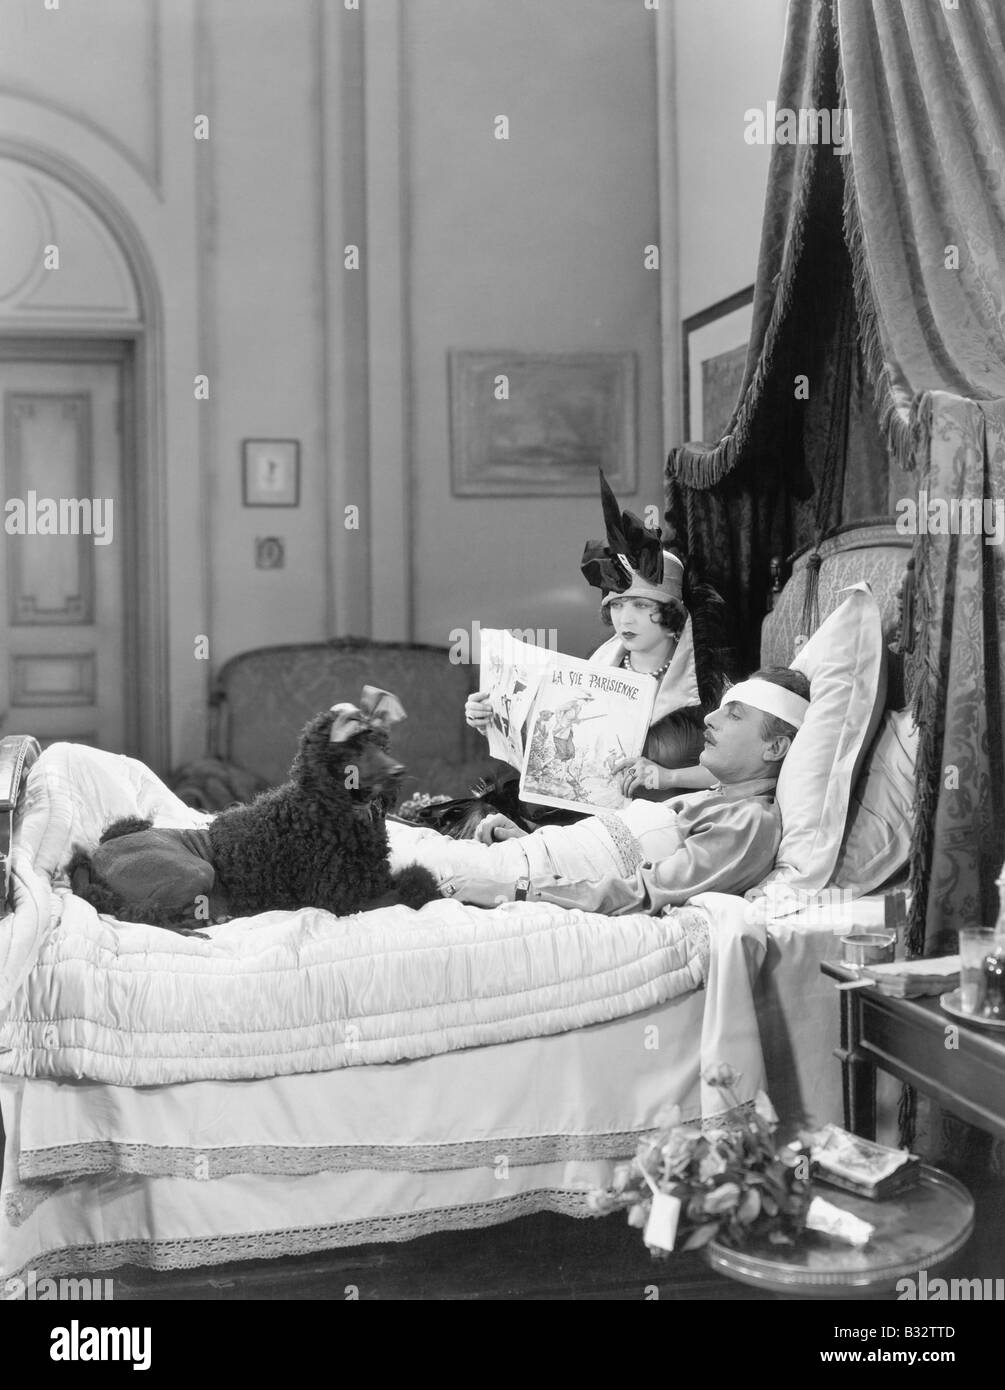 Frau und Pudel sitzt neben einem verletzten Mann im Bett Stockfoto